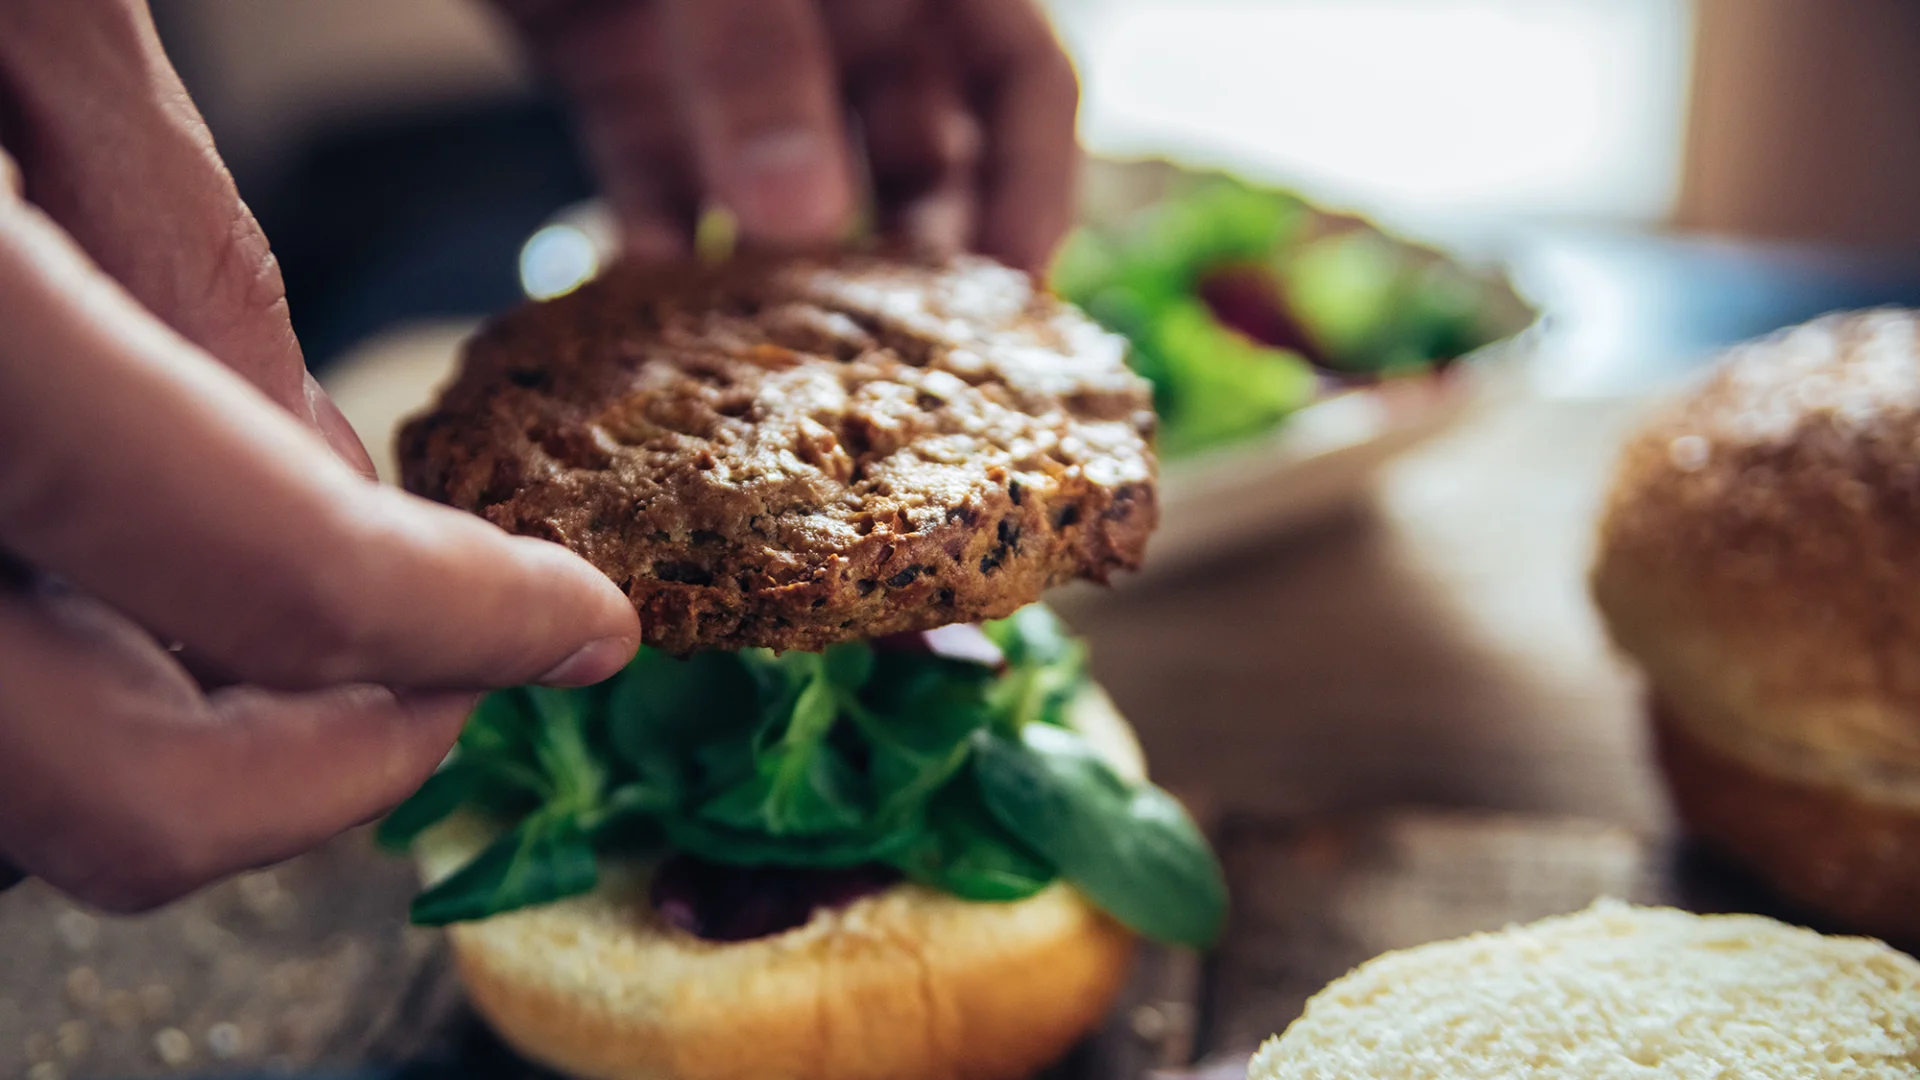 Un burger viene adagiato su un apposito panino con dell'insalata.